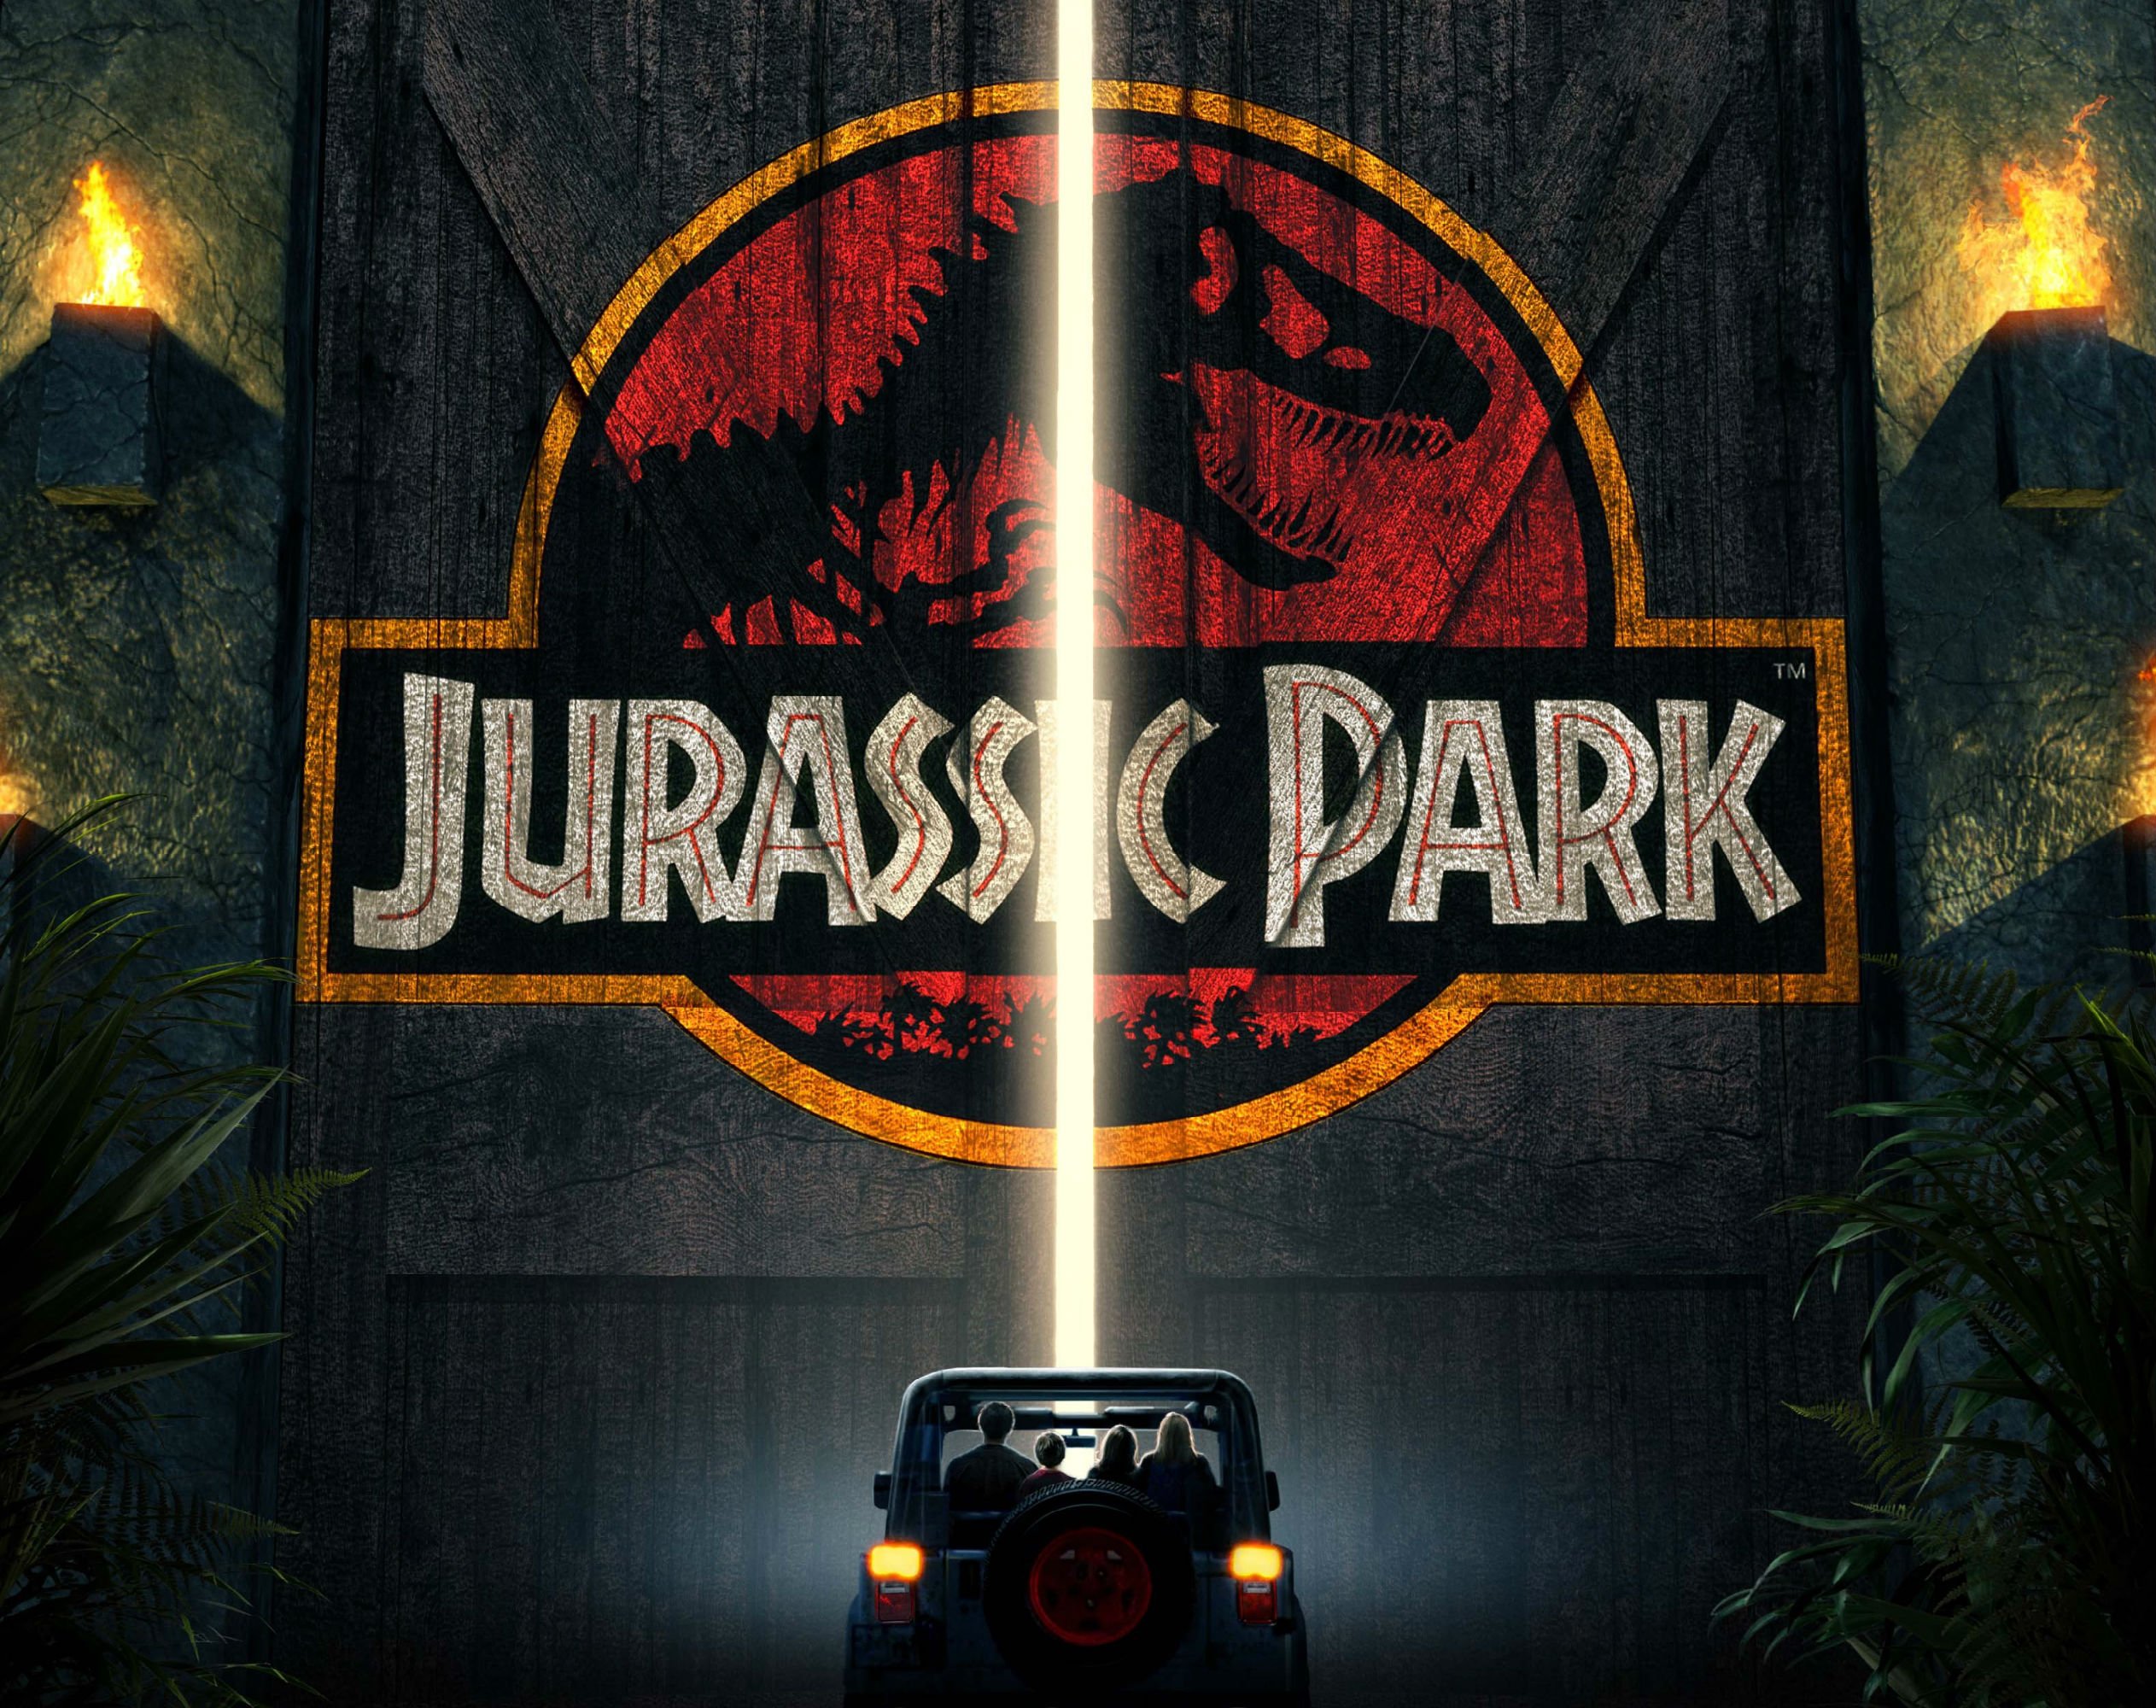 Jurassic Park Adventure Sci Fi Fantasy Dinosaur Movie Film Poster